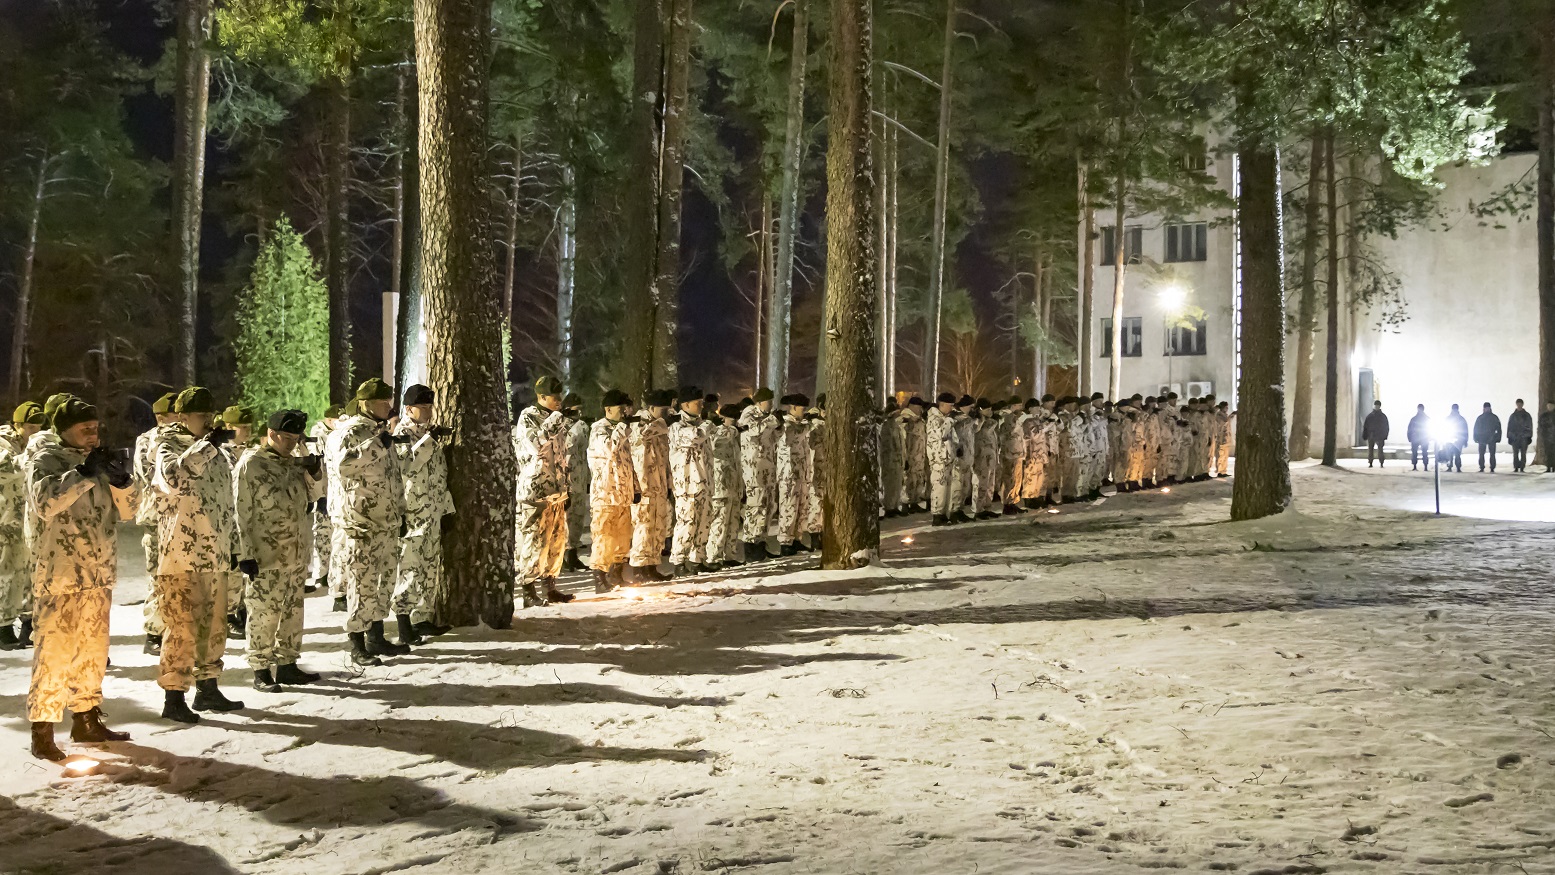 Rivissä lumipukuiset sotilaat juovat katkeraa kalkkia, aliupseereiden perinnejuomaa.